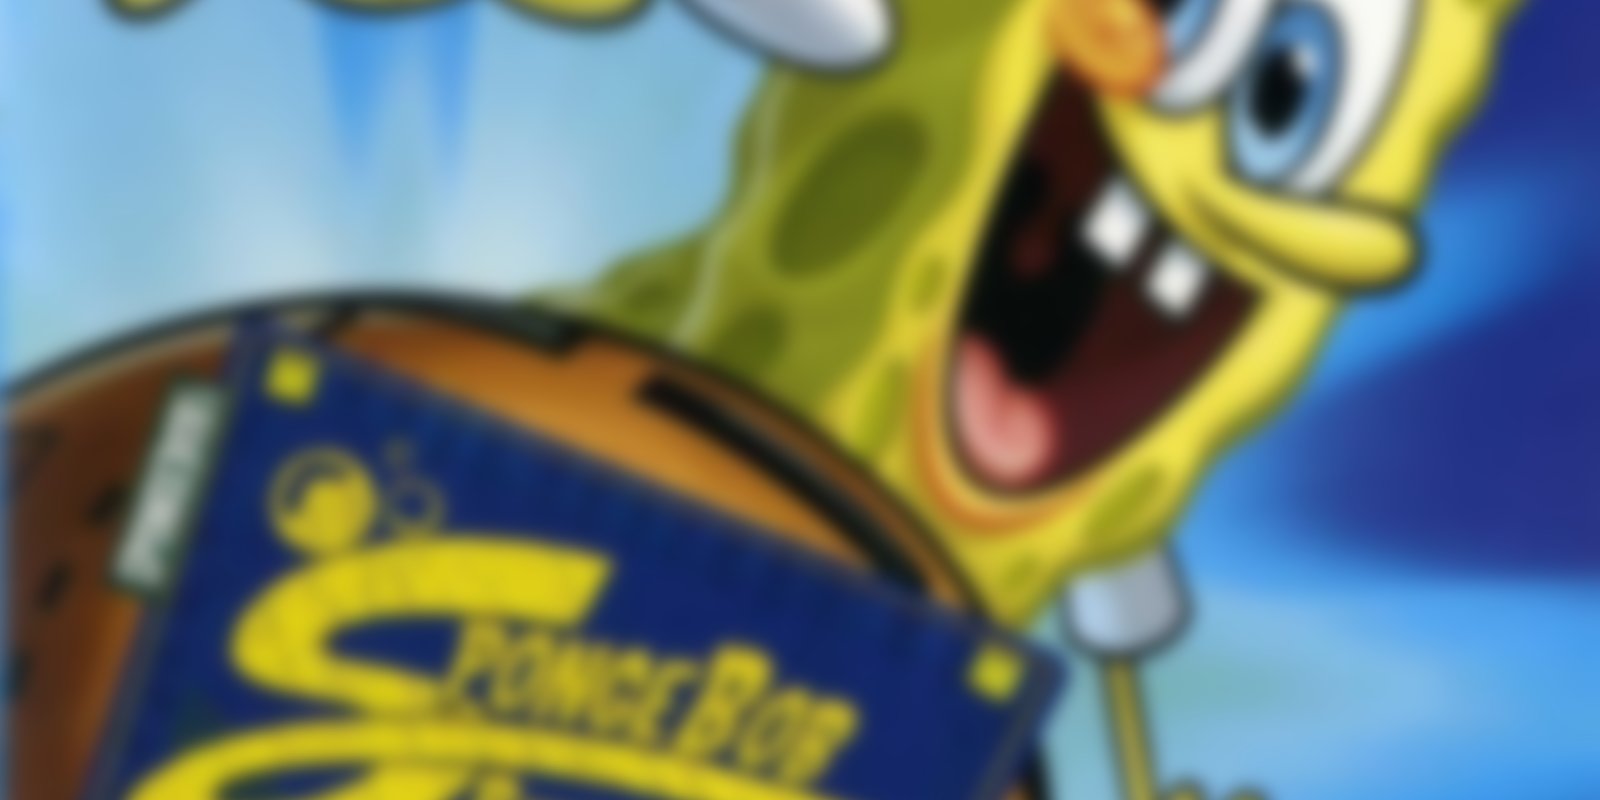 SpongeBob Schwammkopf - SpongeBob Rundschwamm